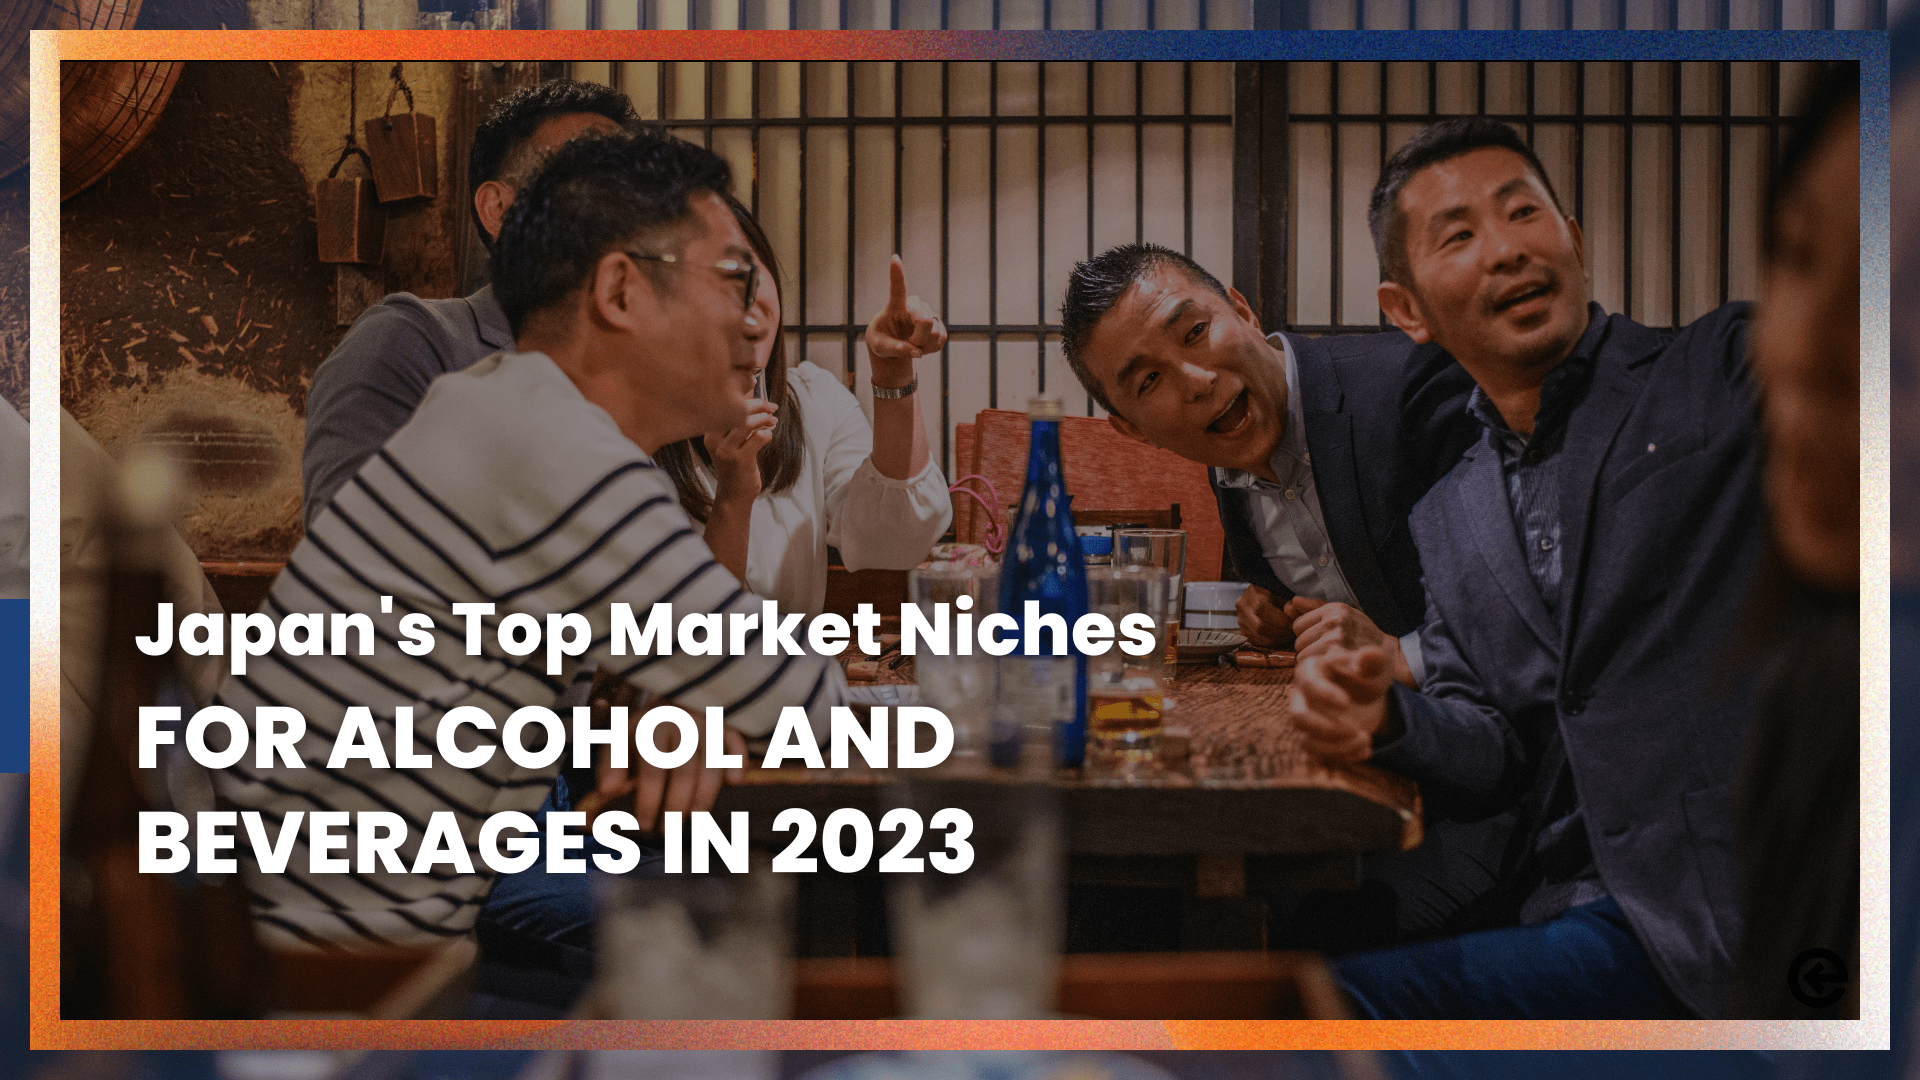 2023 में शराब और पेय पदार्थों के लिए जापान का शीर्ष बाजार